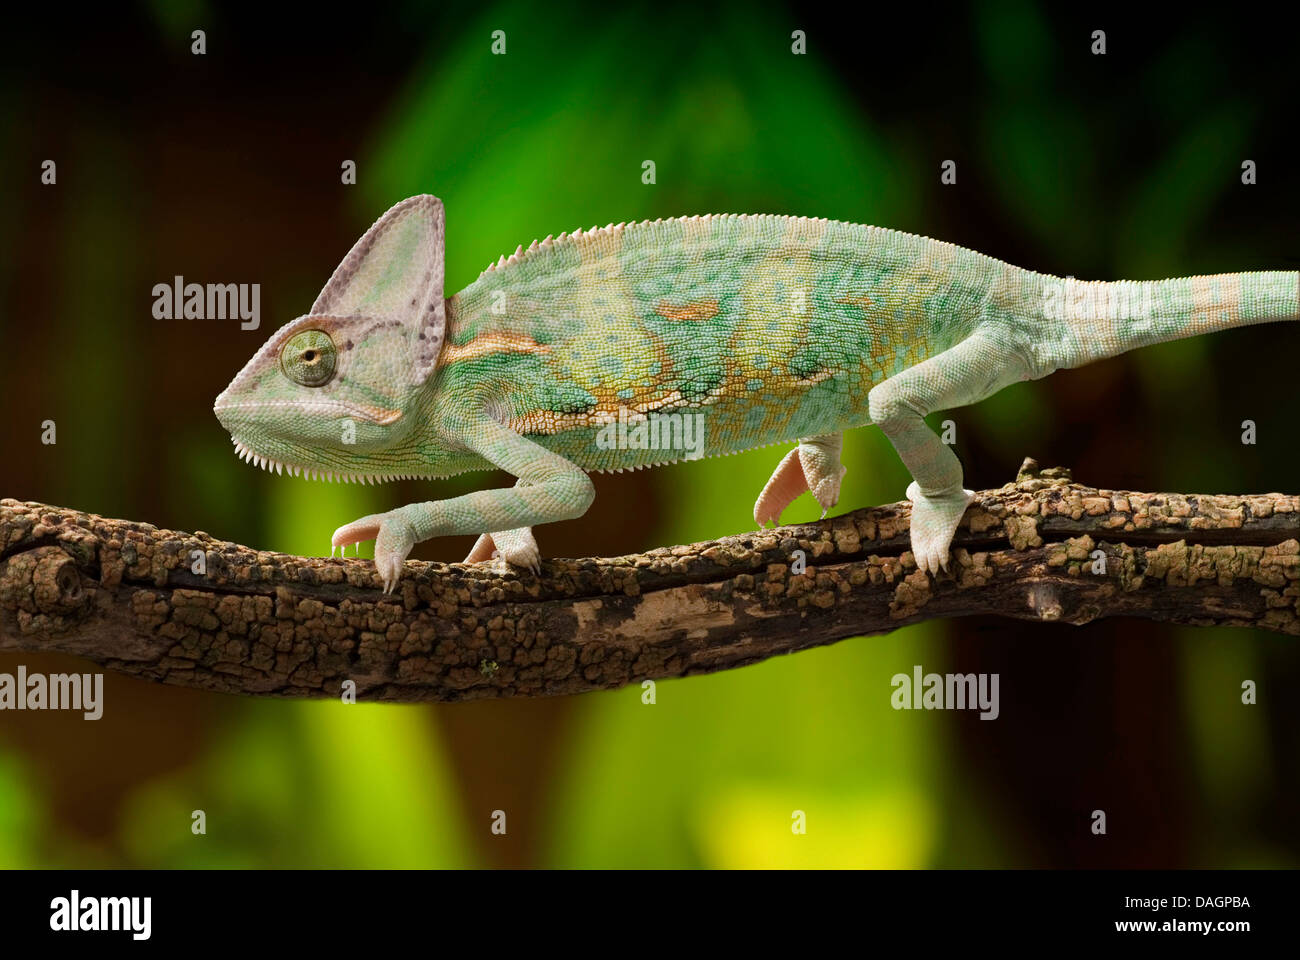 Yemen chameleon, cone-headed chameleon, veiled chameleon (Chamaeleo calyptratus), walking on a branch Stock Photo